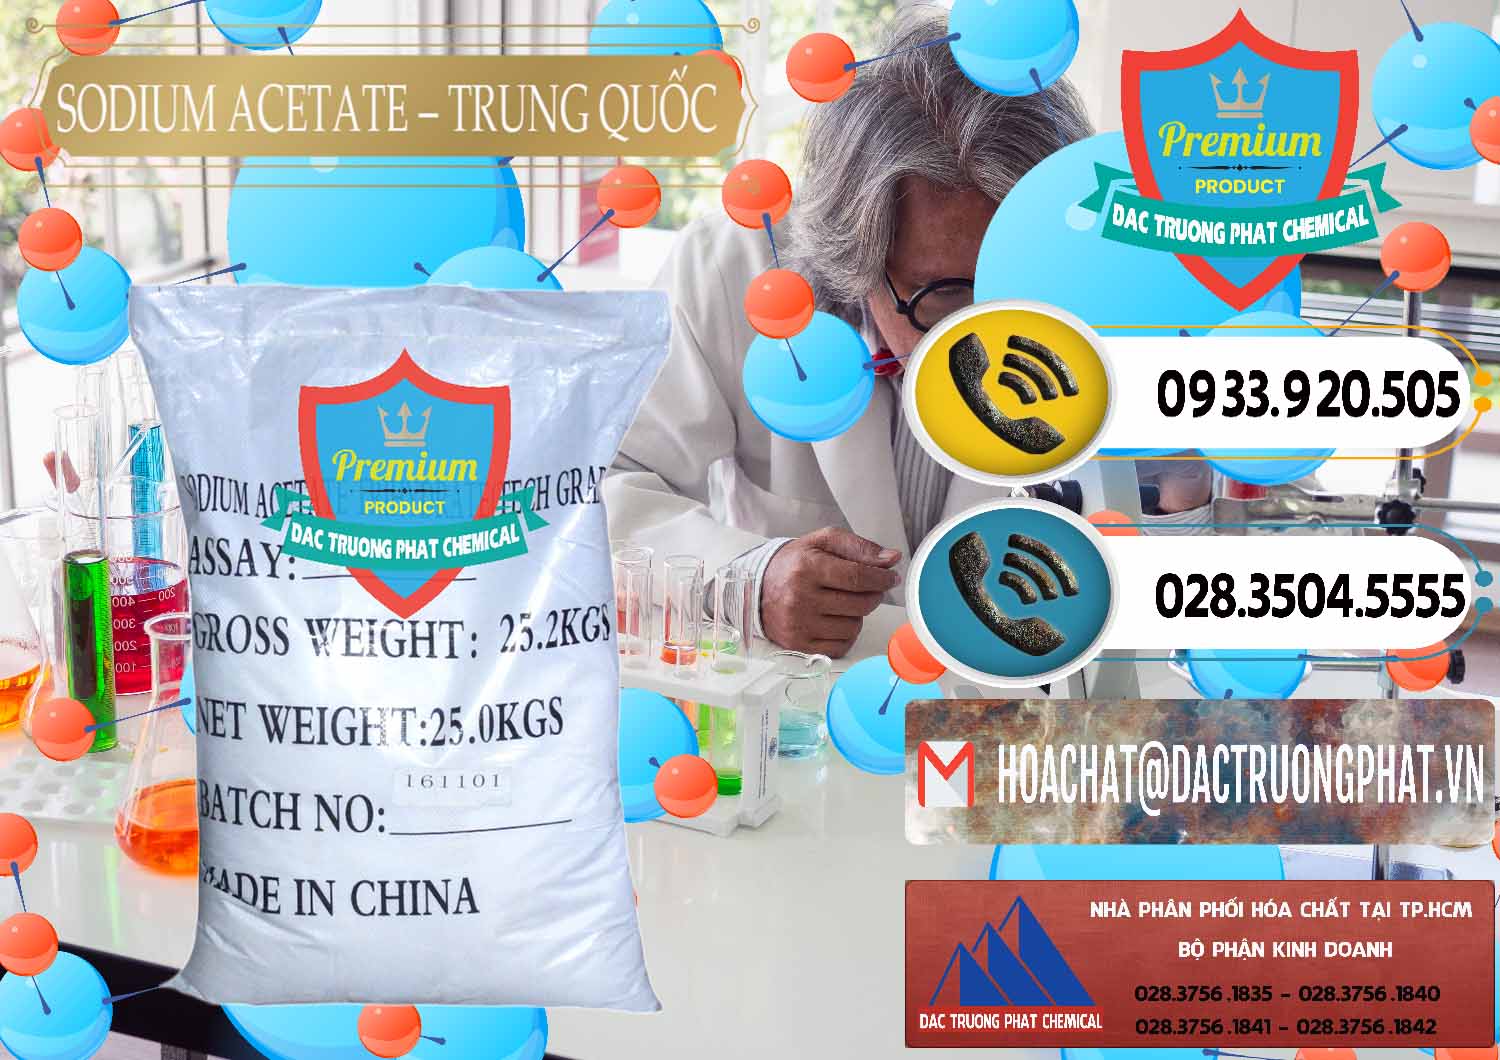 Nơi cung ứng ( bán ) Sodium Acetate - Natri Acetate Trung Quốc China - 0134 - Công ty chuyên bán ( cung cấp ) hóa chất tại TP.HCM - hoachatdetnhuom.vn